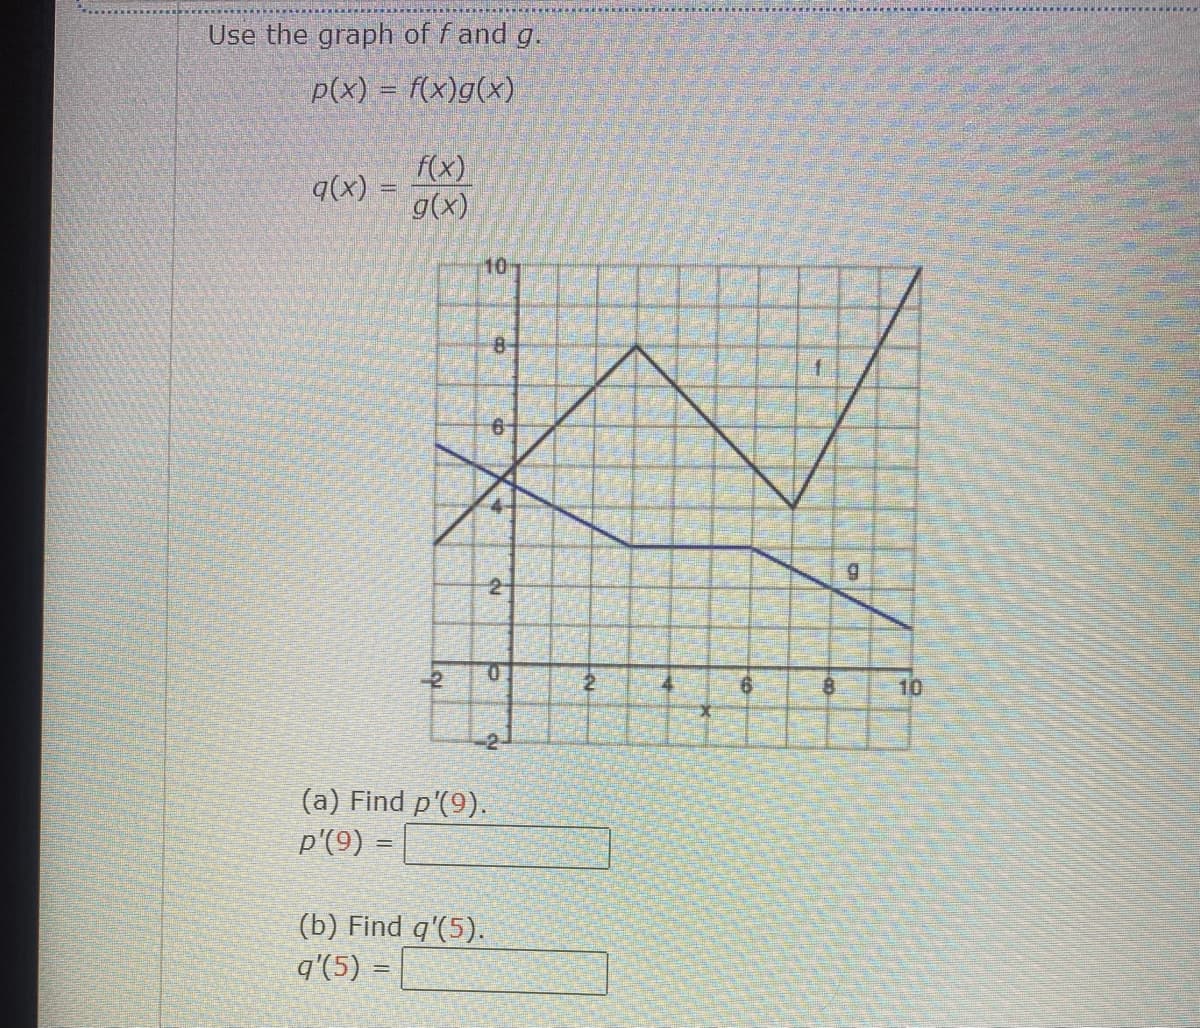 Use the graph of f and g.
p(x) = f(x)g(x)
g(x) =
f(x)
g(x)
10-
8-
6
12-
2
(a) Find p'(9).
p'(9) =
(b) Find q'(5).
q'(5) =
-2-
2
X
1
8
10